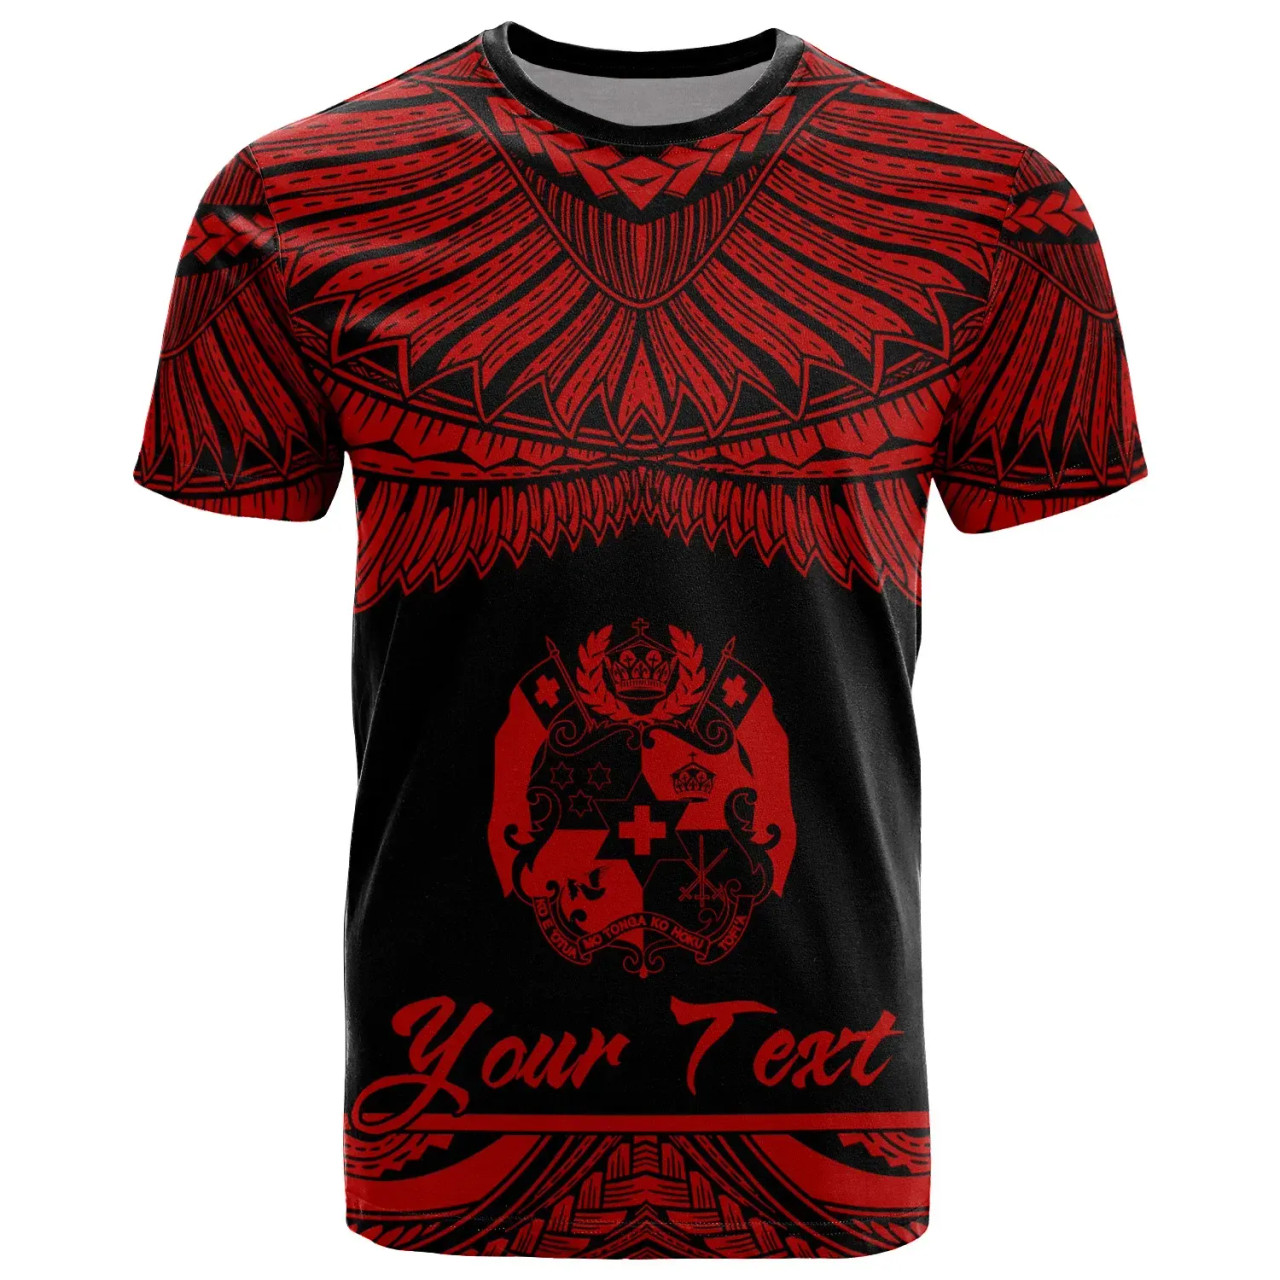 Tonga Polynesian Custom Personalised T-Shirt - Tongan Pride Red Version 1